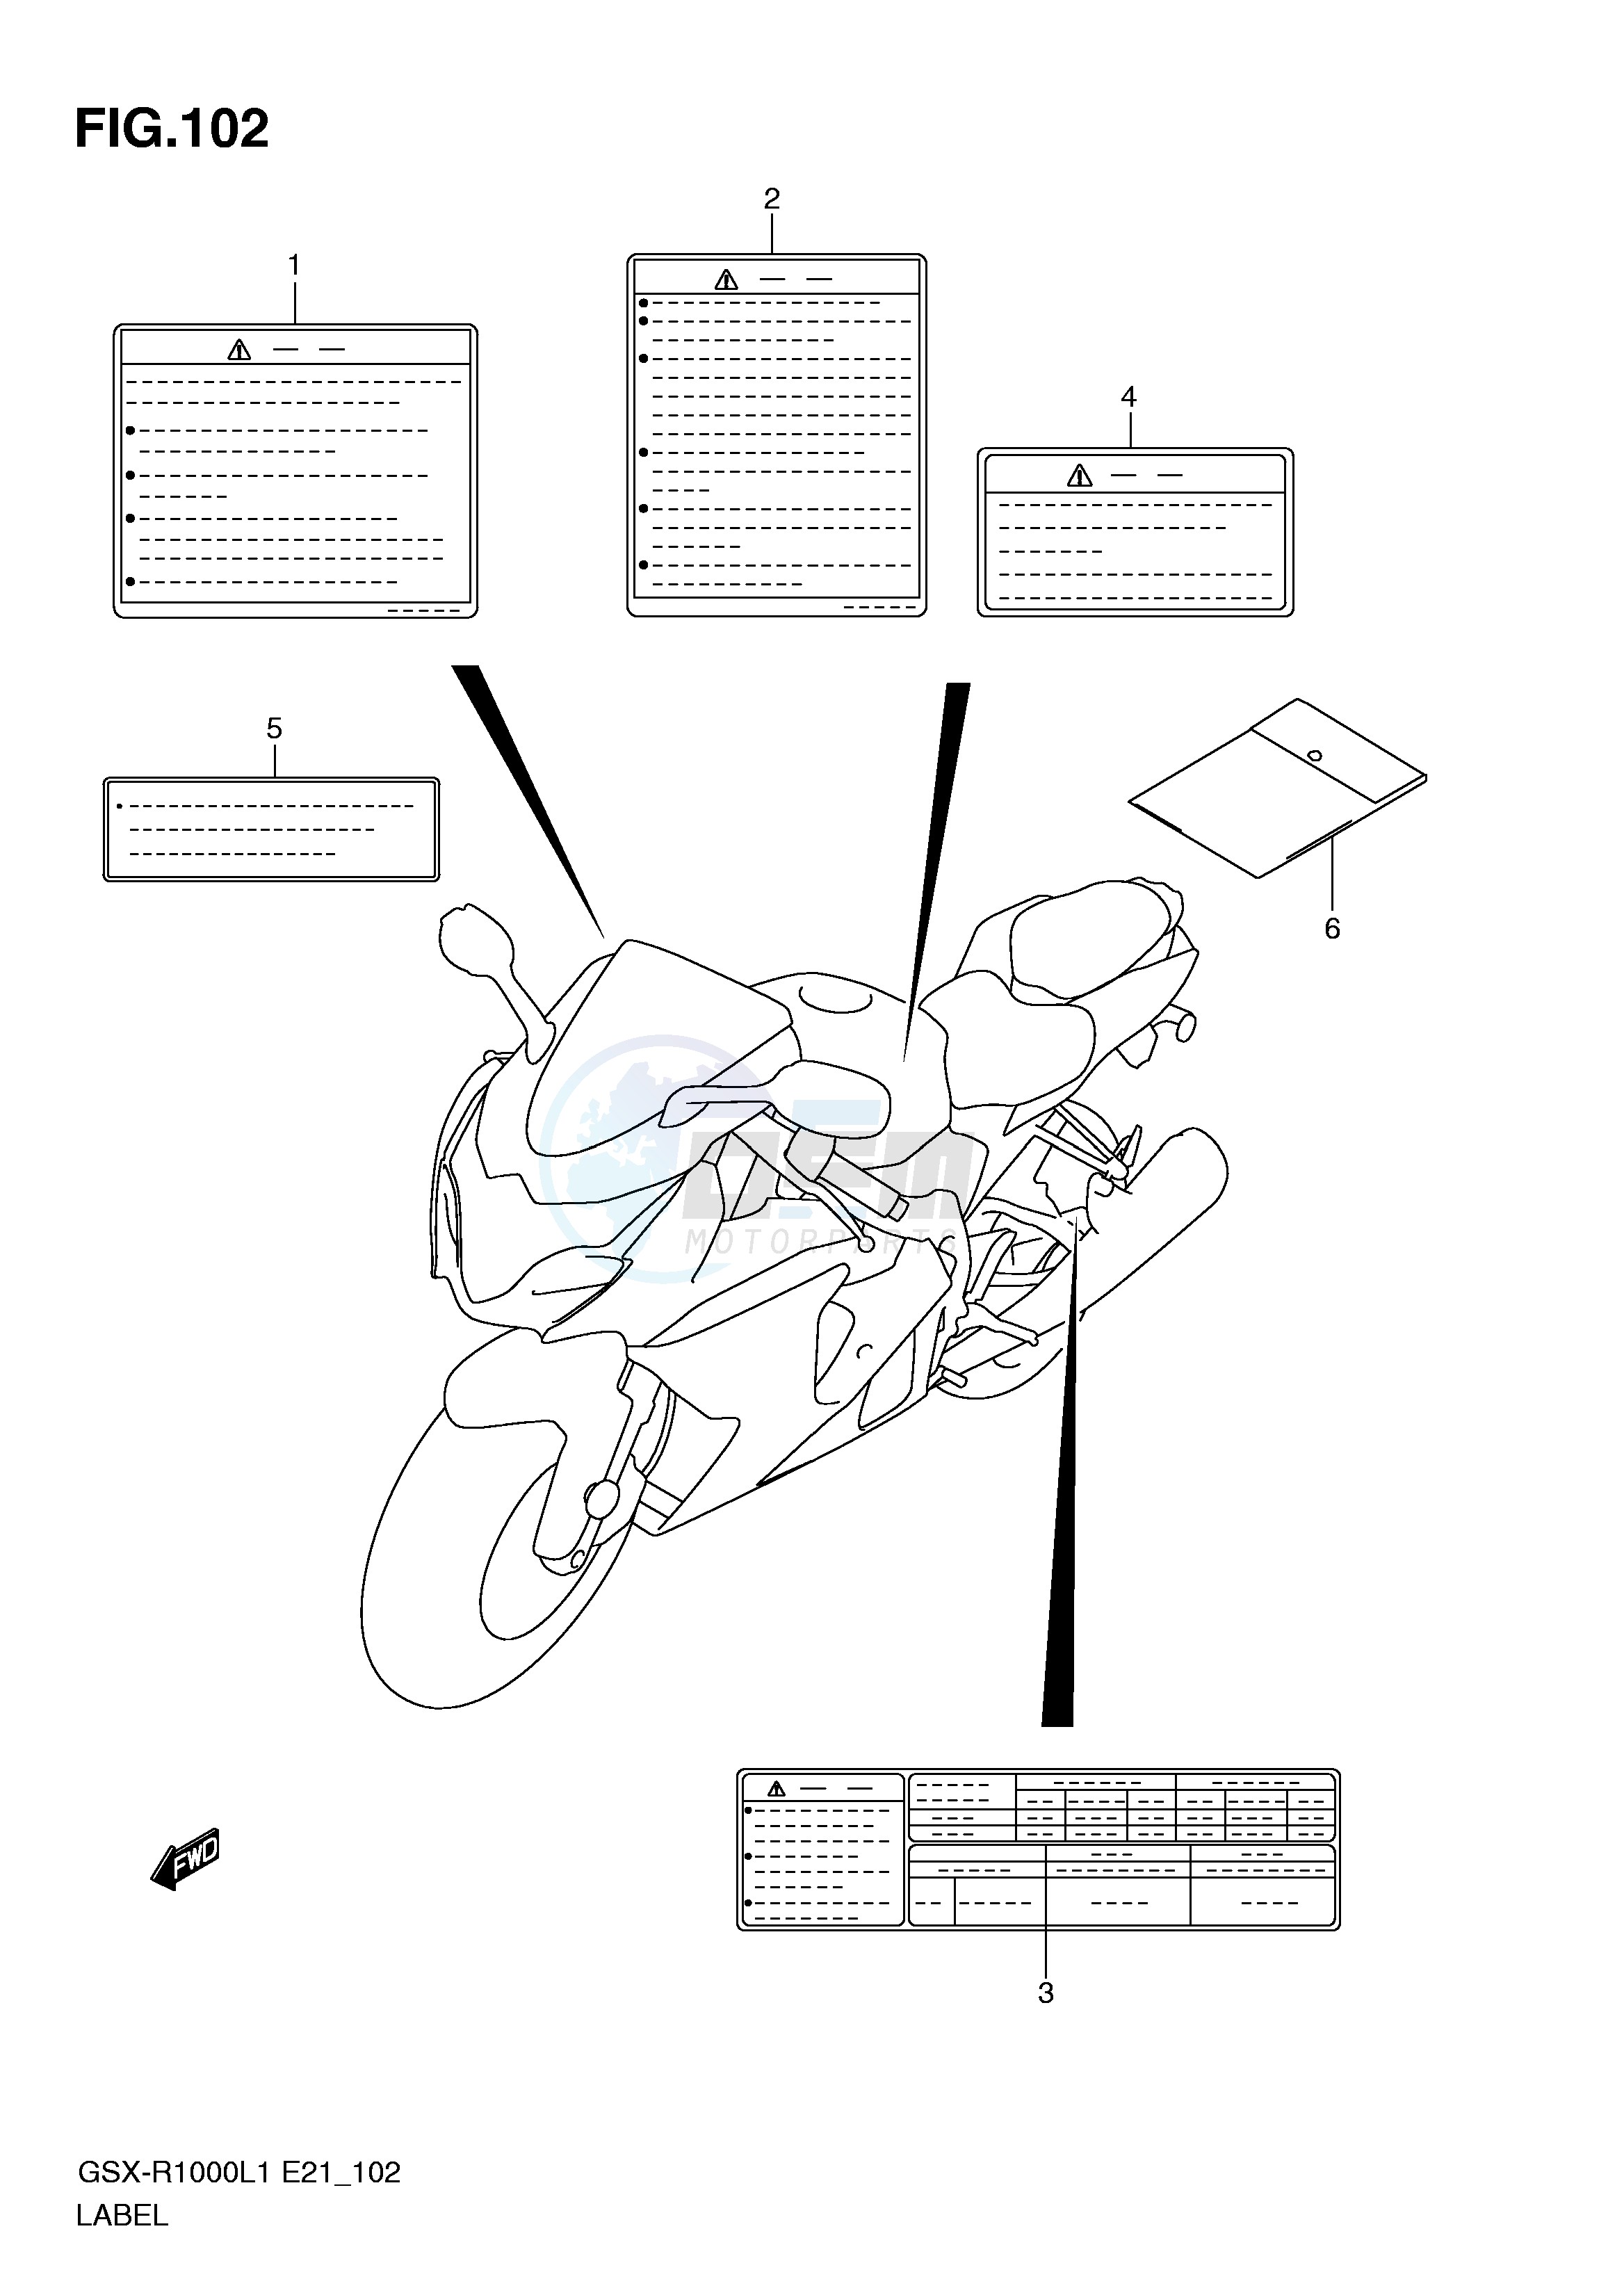 LABEL (GSX-R1000L1 E51) blueprint